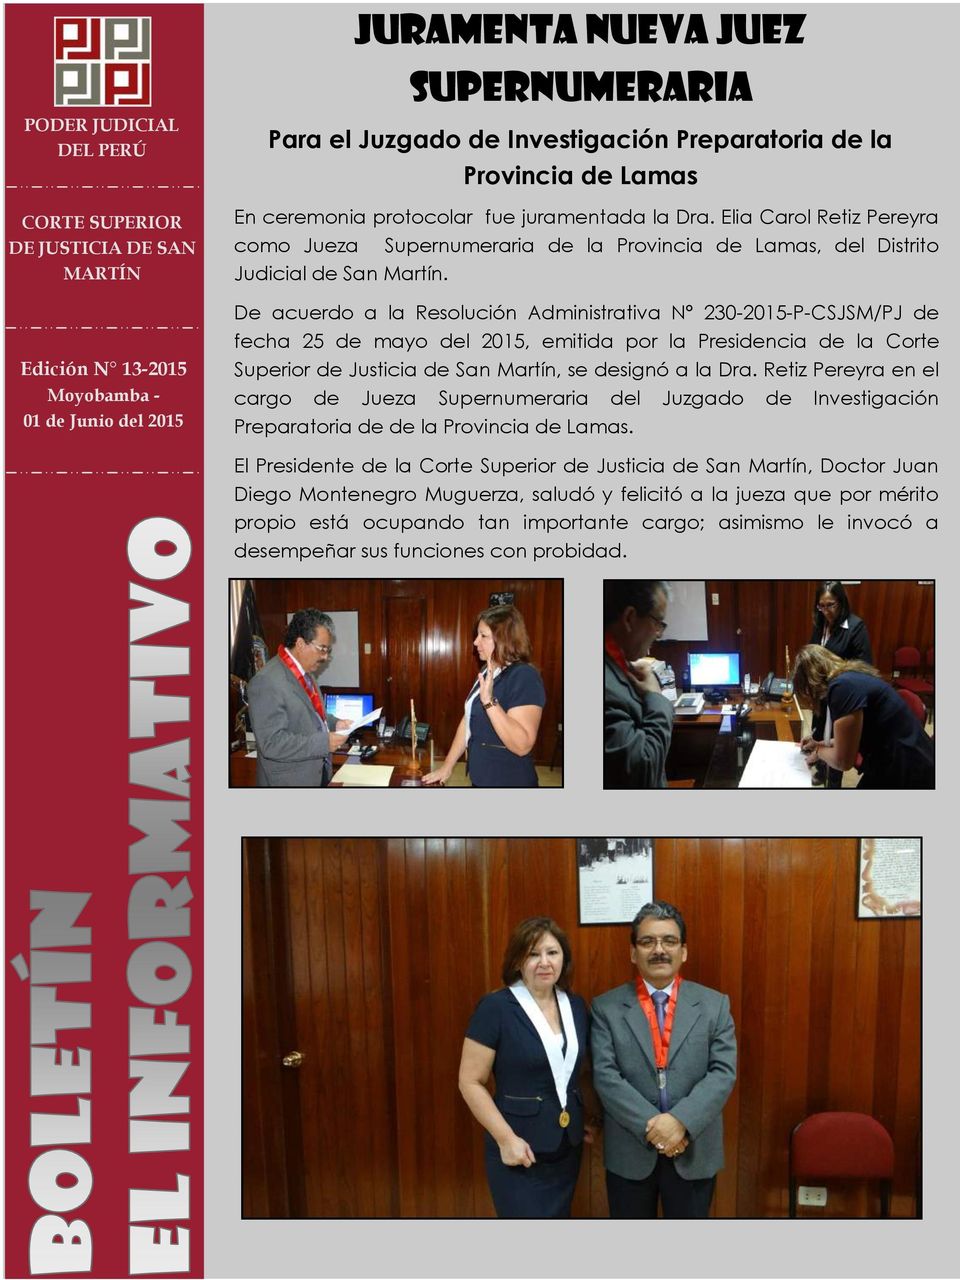 De acuerdo a la Resolución Administrativa N 230-2015-P-CSJSM/PJ de fecha 25 de mayo del 2015, emitida por la Presidencia de la Corte Superior de Justicia de San Martín, se designó a la Dra.